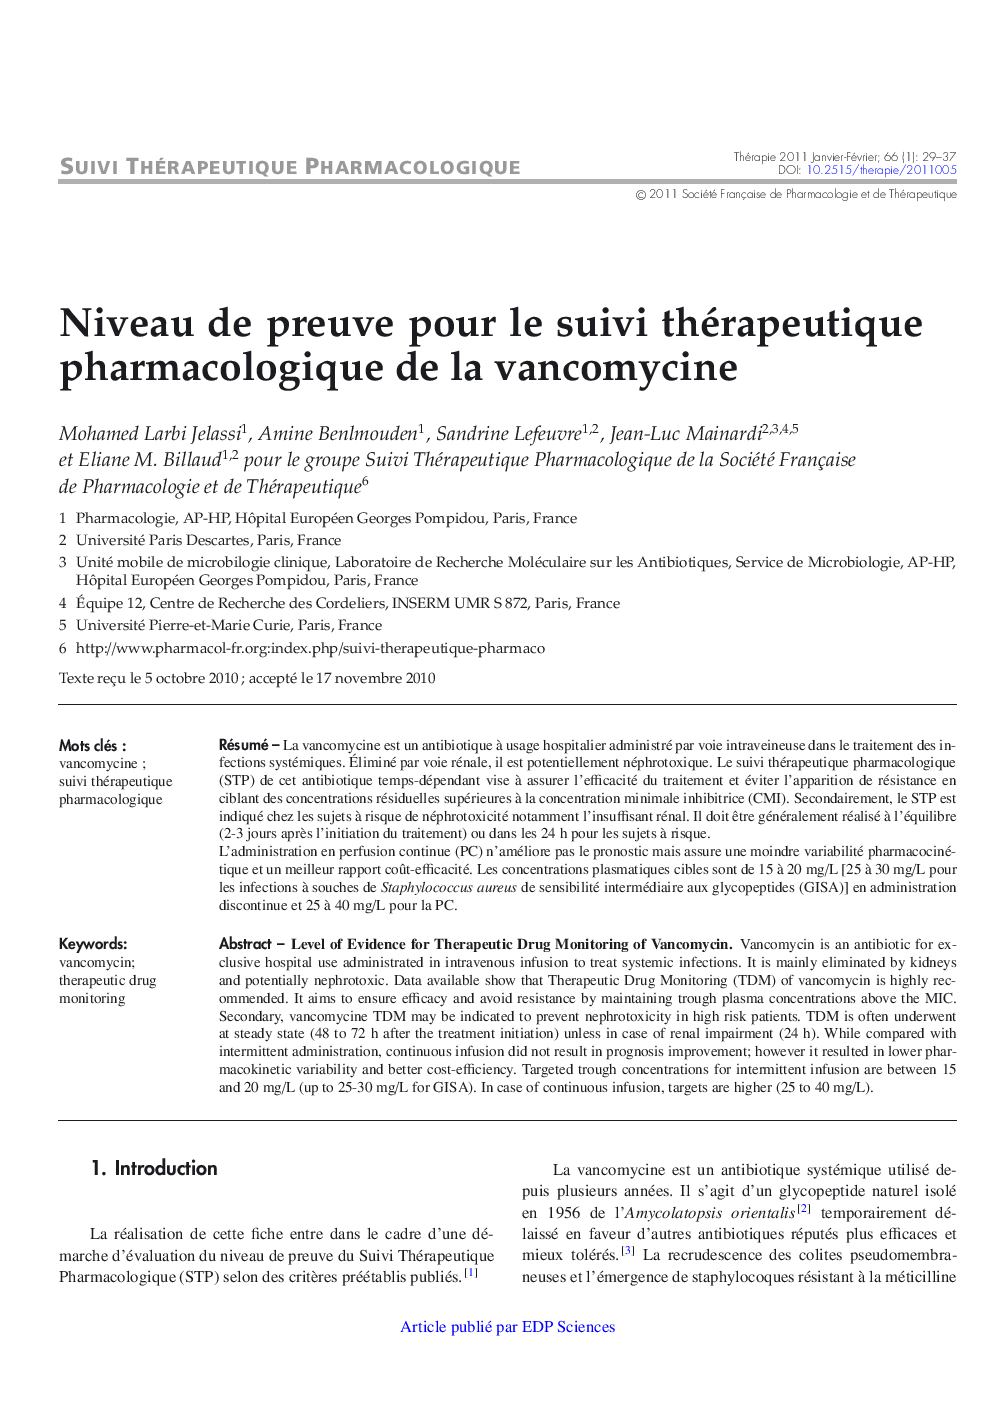 Niveau de preuve pour le suivi thérapeutique pharmacologique de la vancomycine